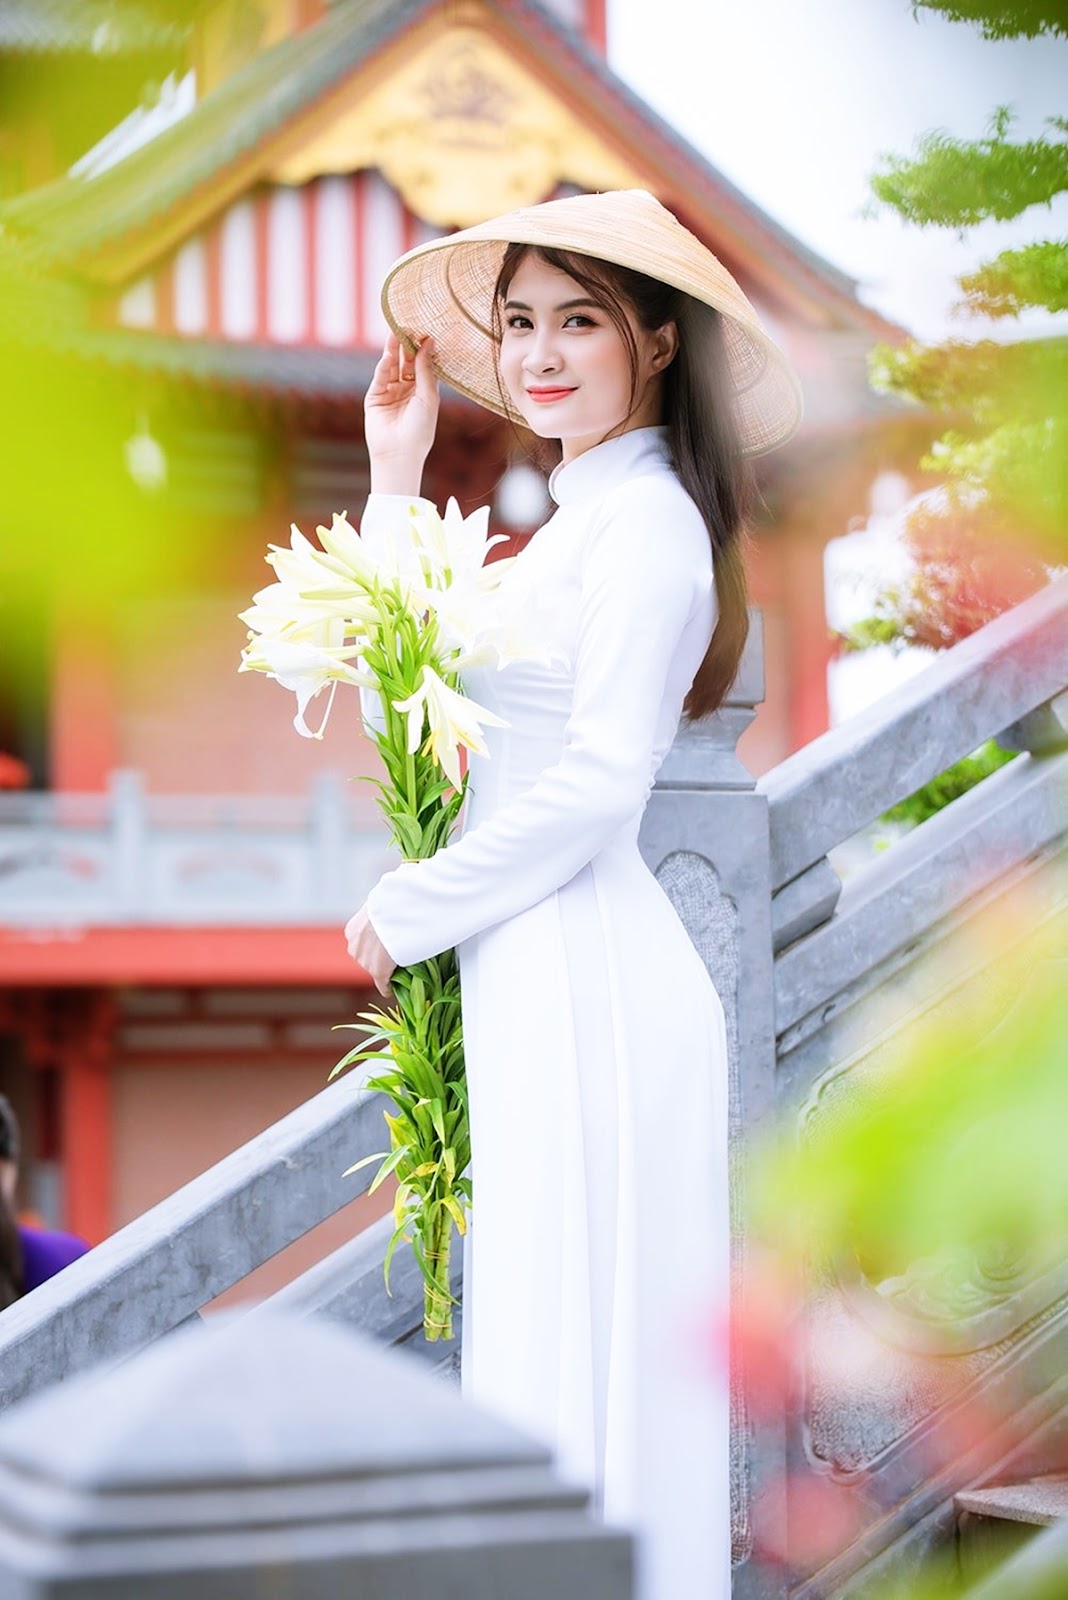 Áo dài - trang phục truyền thống tôn vinh nét đẹp phụ nữ Việt